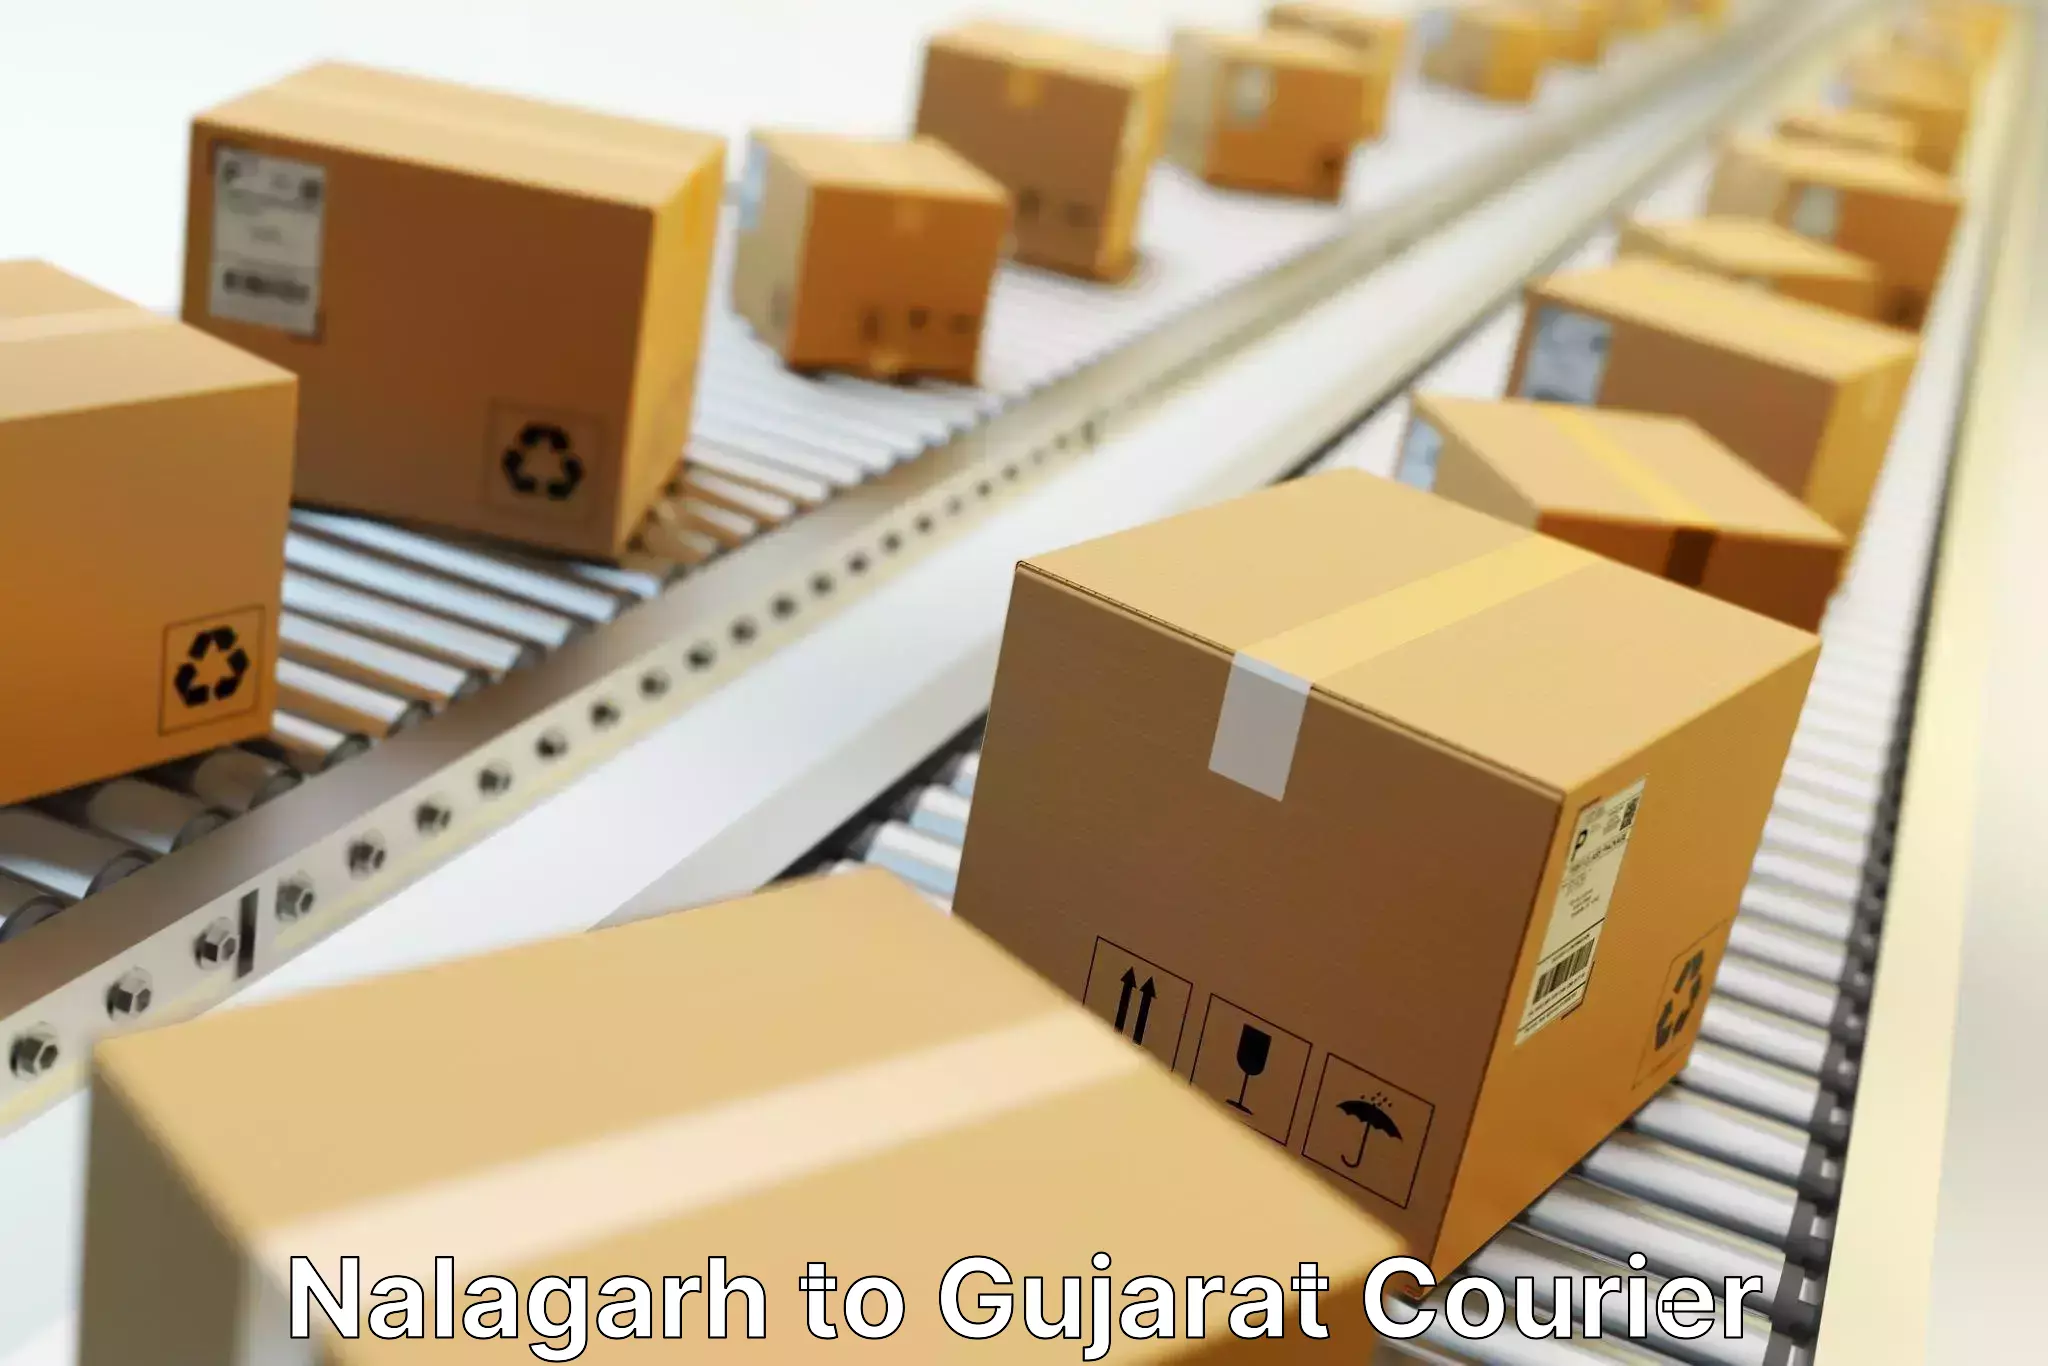 Express package handling Nalagarh to Radhanpur